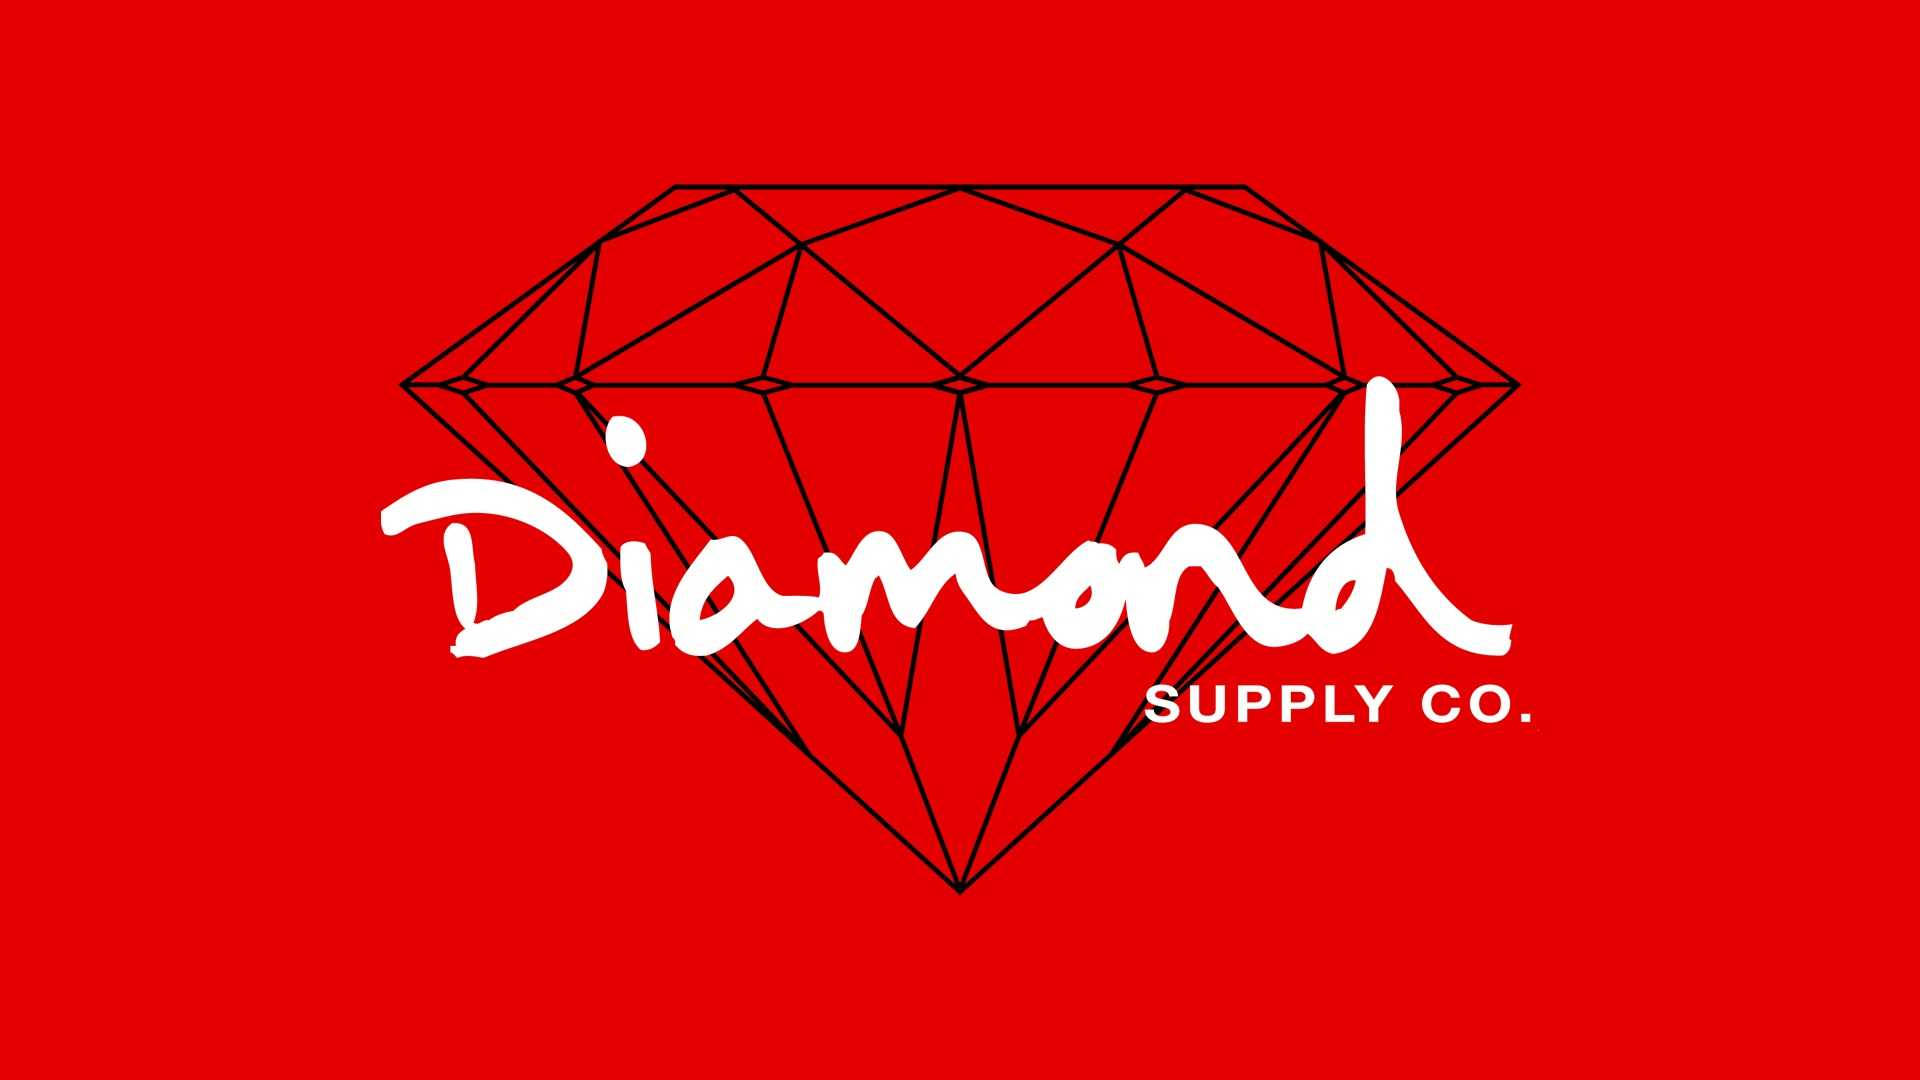 Diamondsupply Co Logotyp I Rött På Datorskärmen Eller Mobilbakgrund. Wallpaper